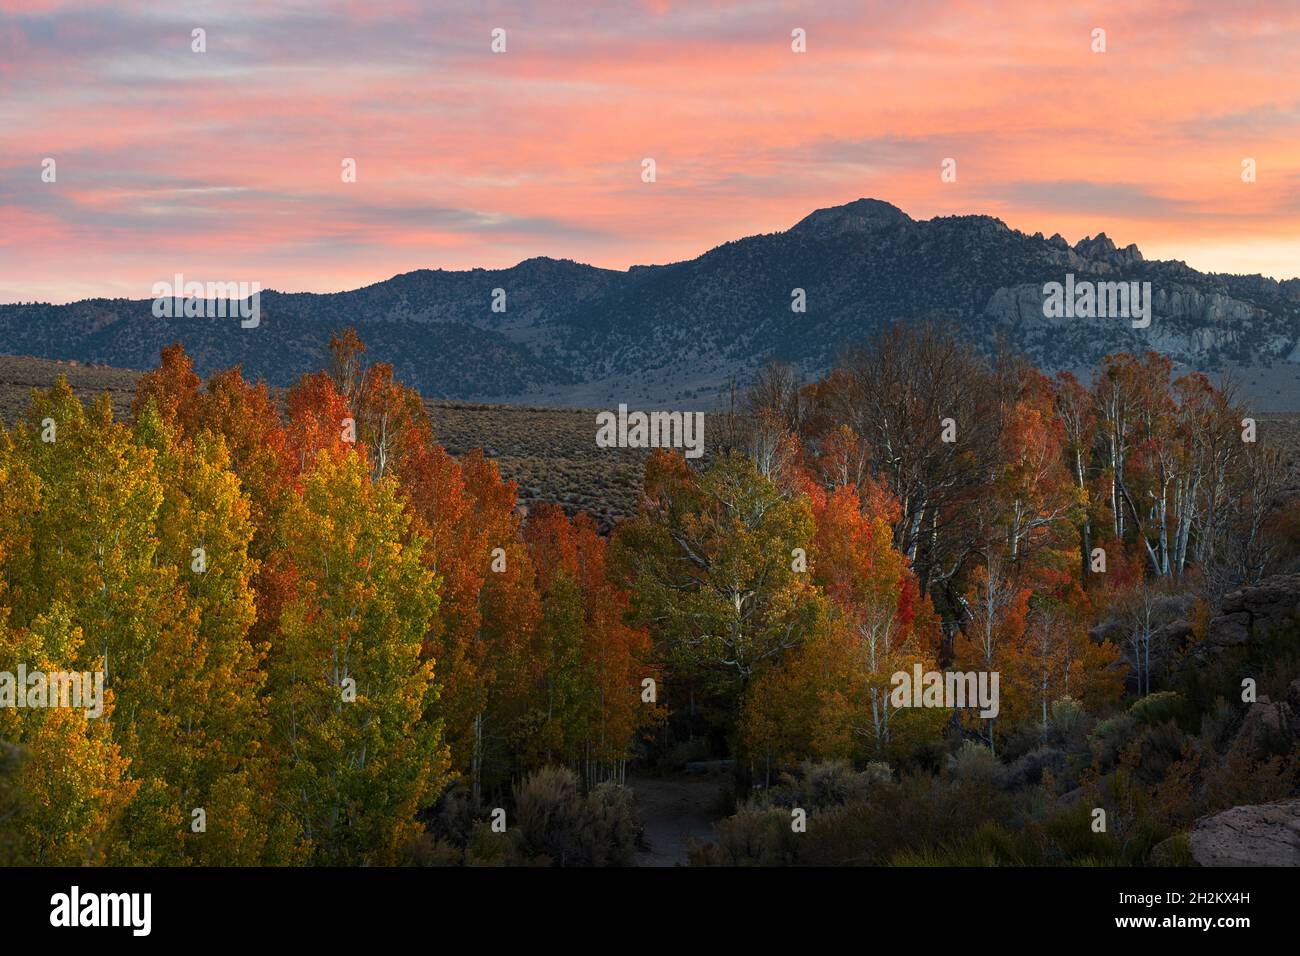 Colores de otoño protegidos en barrancos del desierto cerca del lago Mono al amanecer. Foto de stock